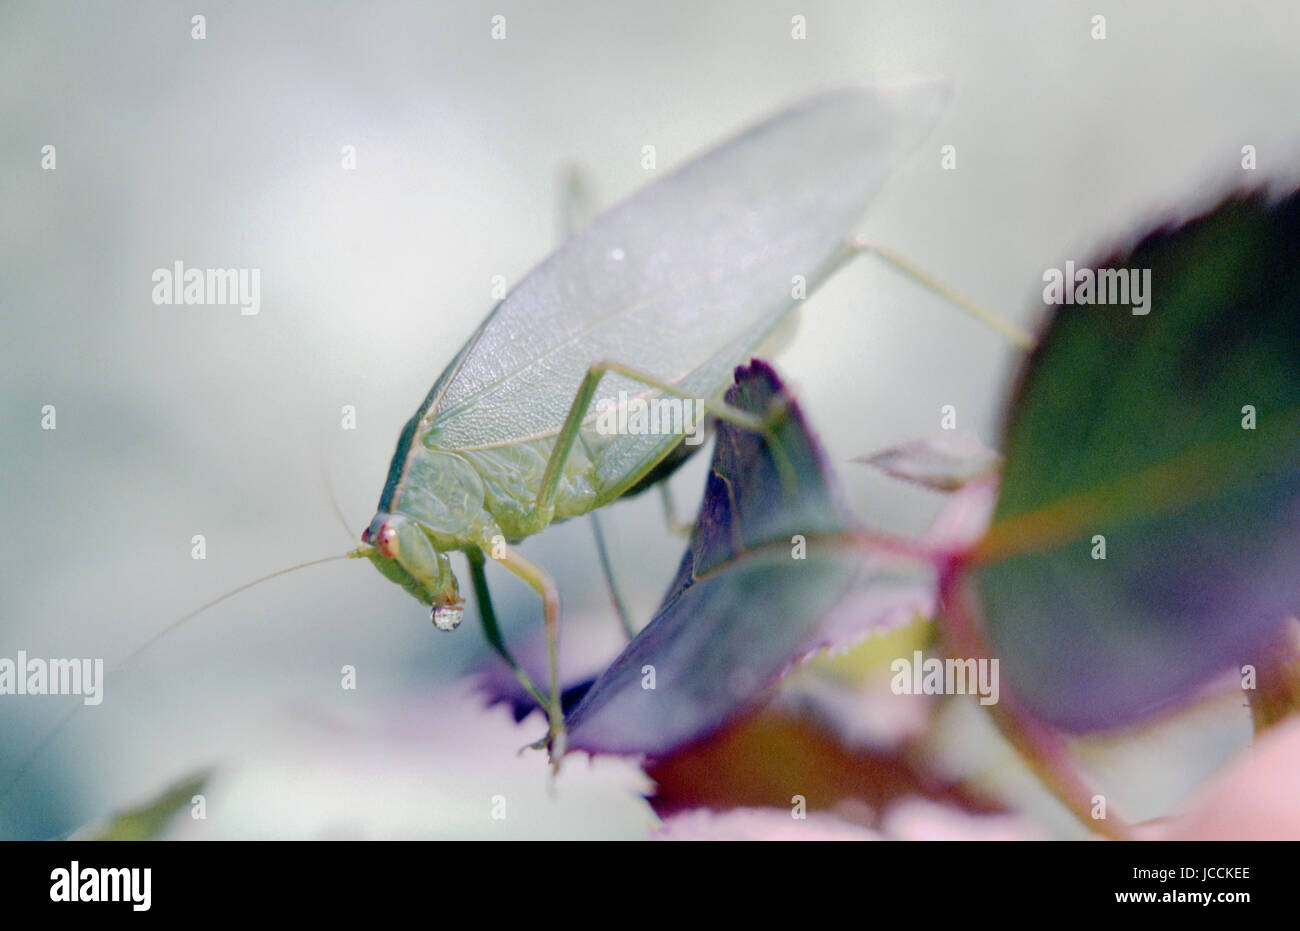 Les insectes de la famille Tettigoniidae sont communément appelé katydids, bush grillons ou sauterelles longicorne. New South Wales, Australie Banque D'Images